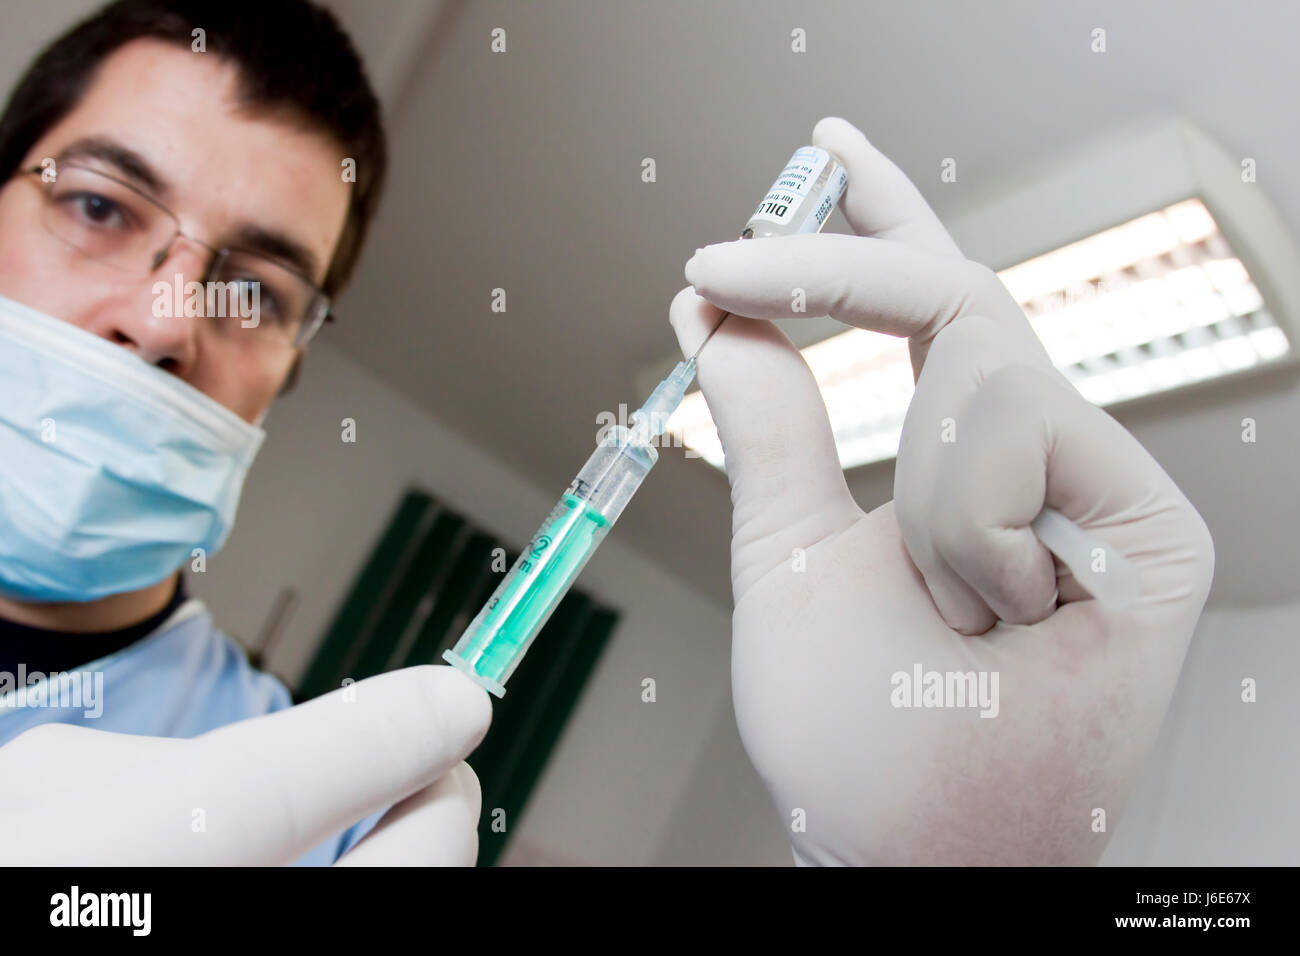 Médecin praticien médical médecin infirmier santé grippe médicale à des fins médicinales Banque D'Images